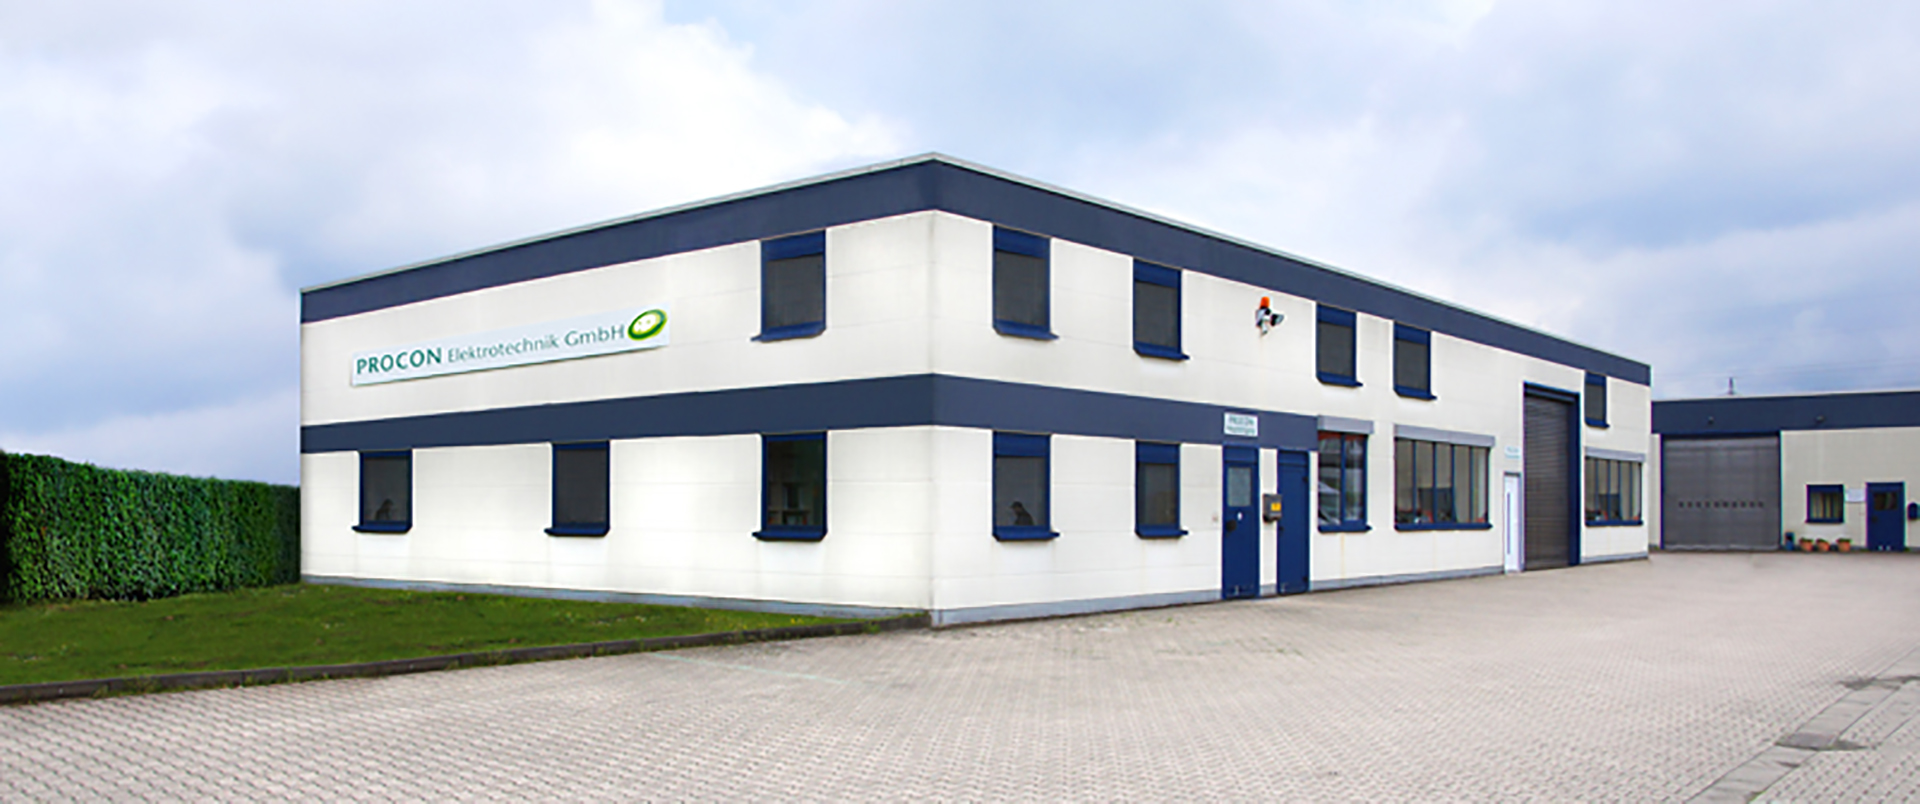 PROCON Elektrotechnik GmbH